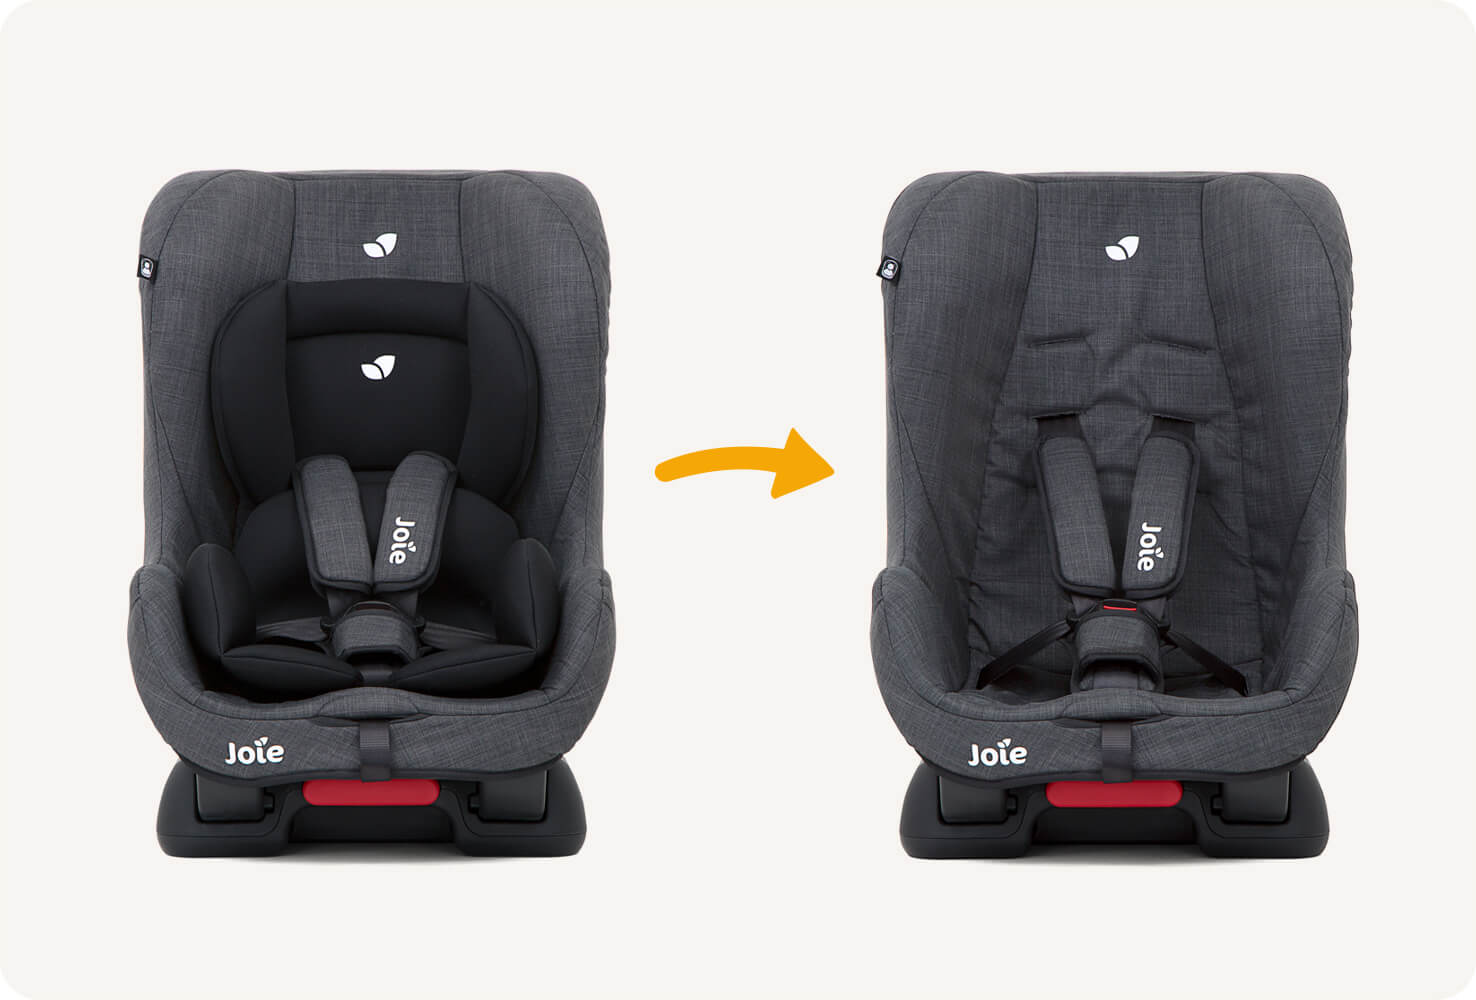  joie tilt neigbarer Autokindersitz mit eingesetzten Babyeinsätzen für einen festen Sitz